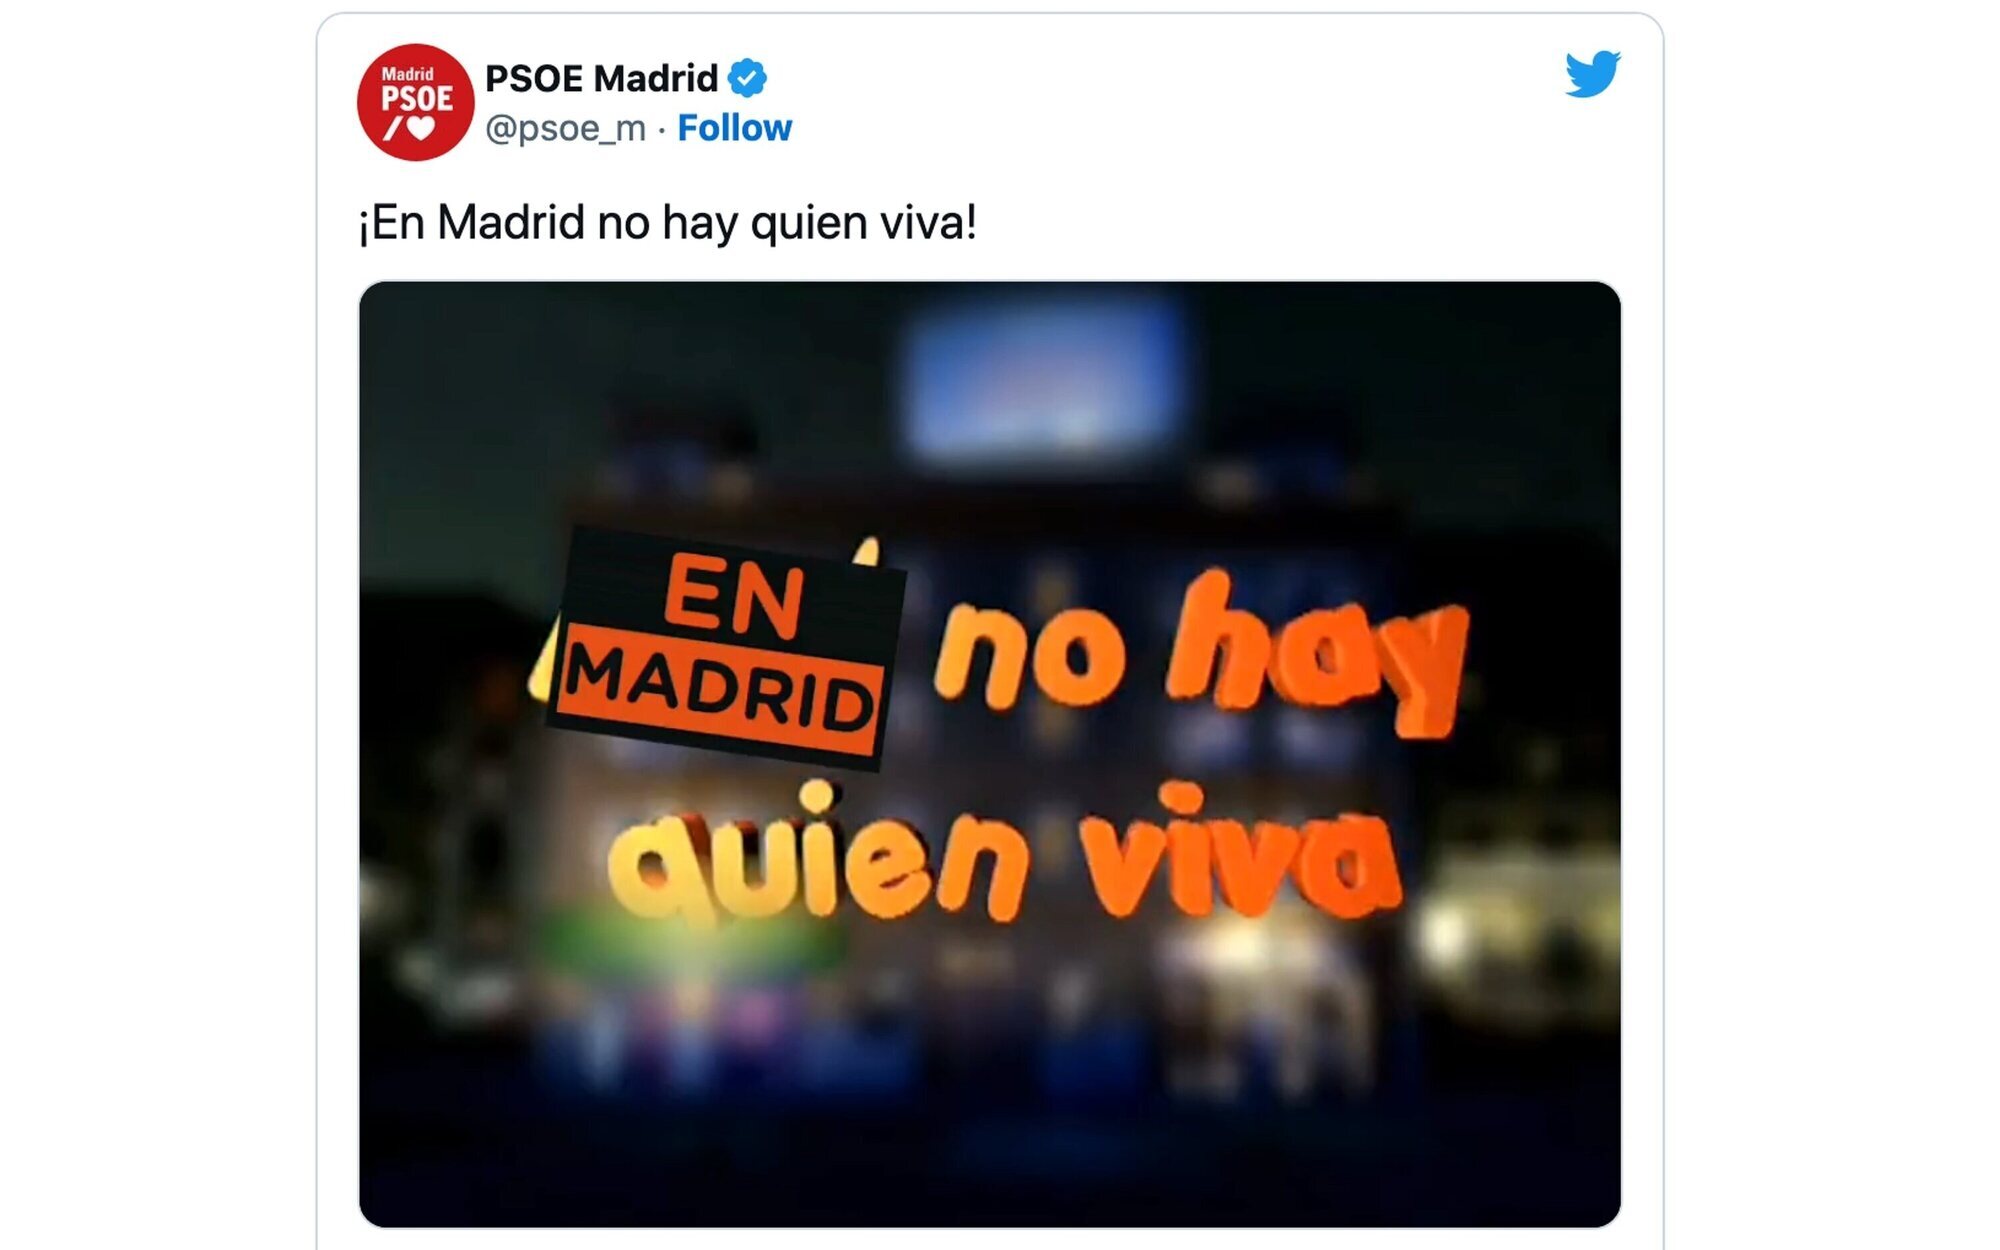 El PSOE de Madrid tira de 'Aquí no hay quien viva' en su campaña sobre Vivienda (y Más Madrid acusa de plagio)